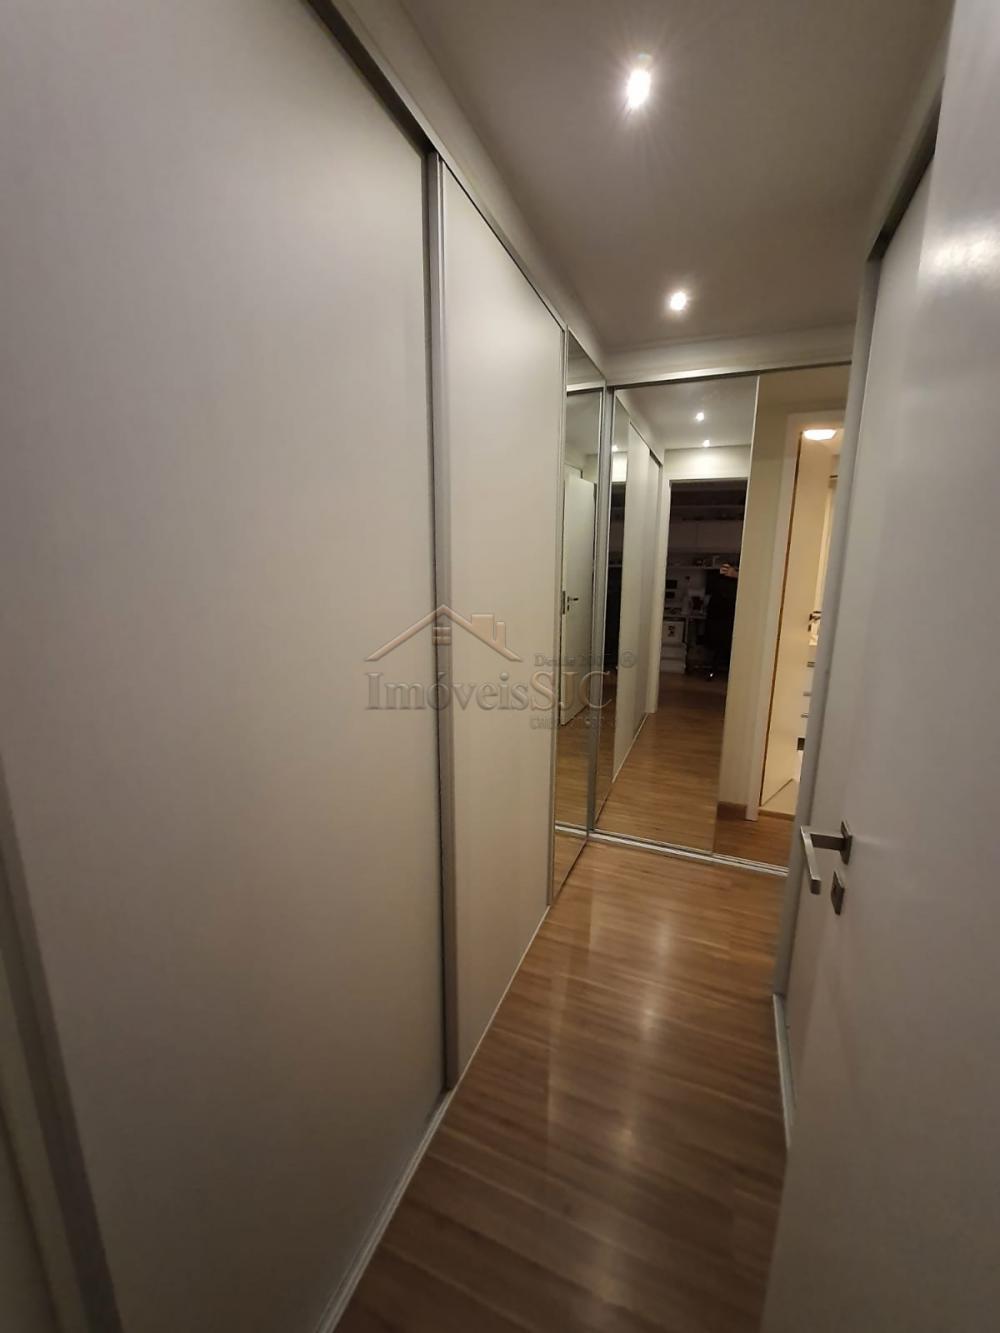 Comprar Apartamentos / Padrão em São José dos Campos R$ 1.590.000,00 - Foto 10